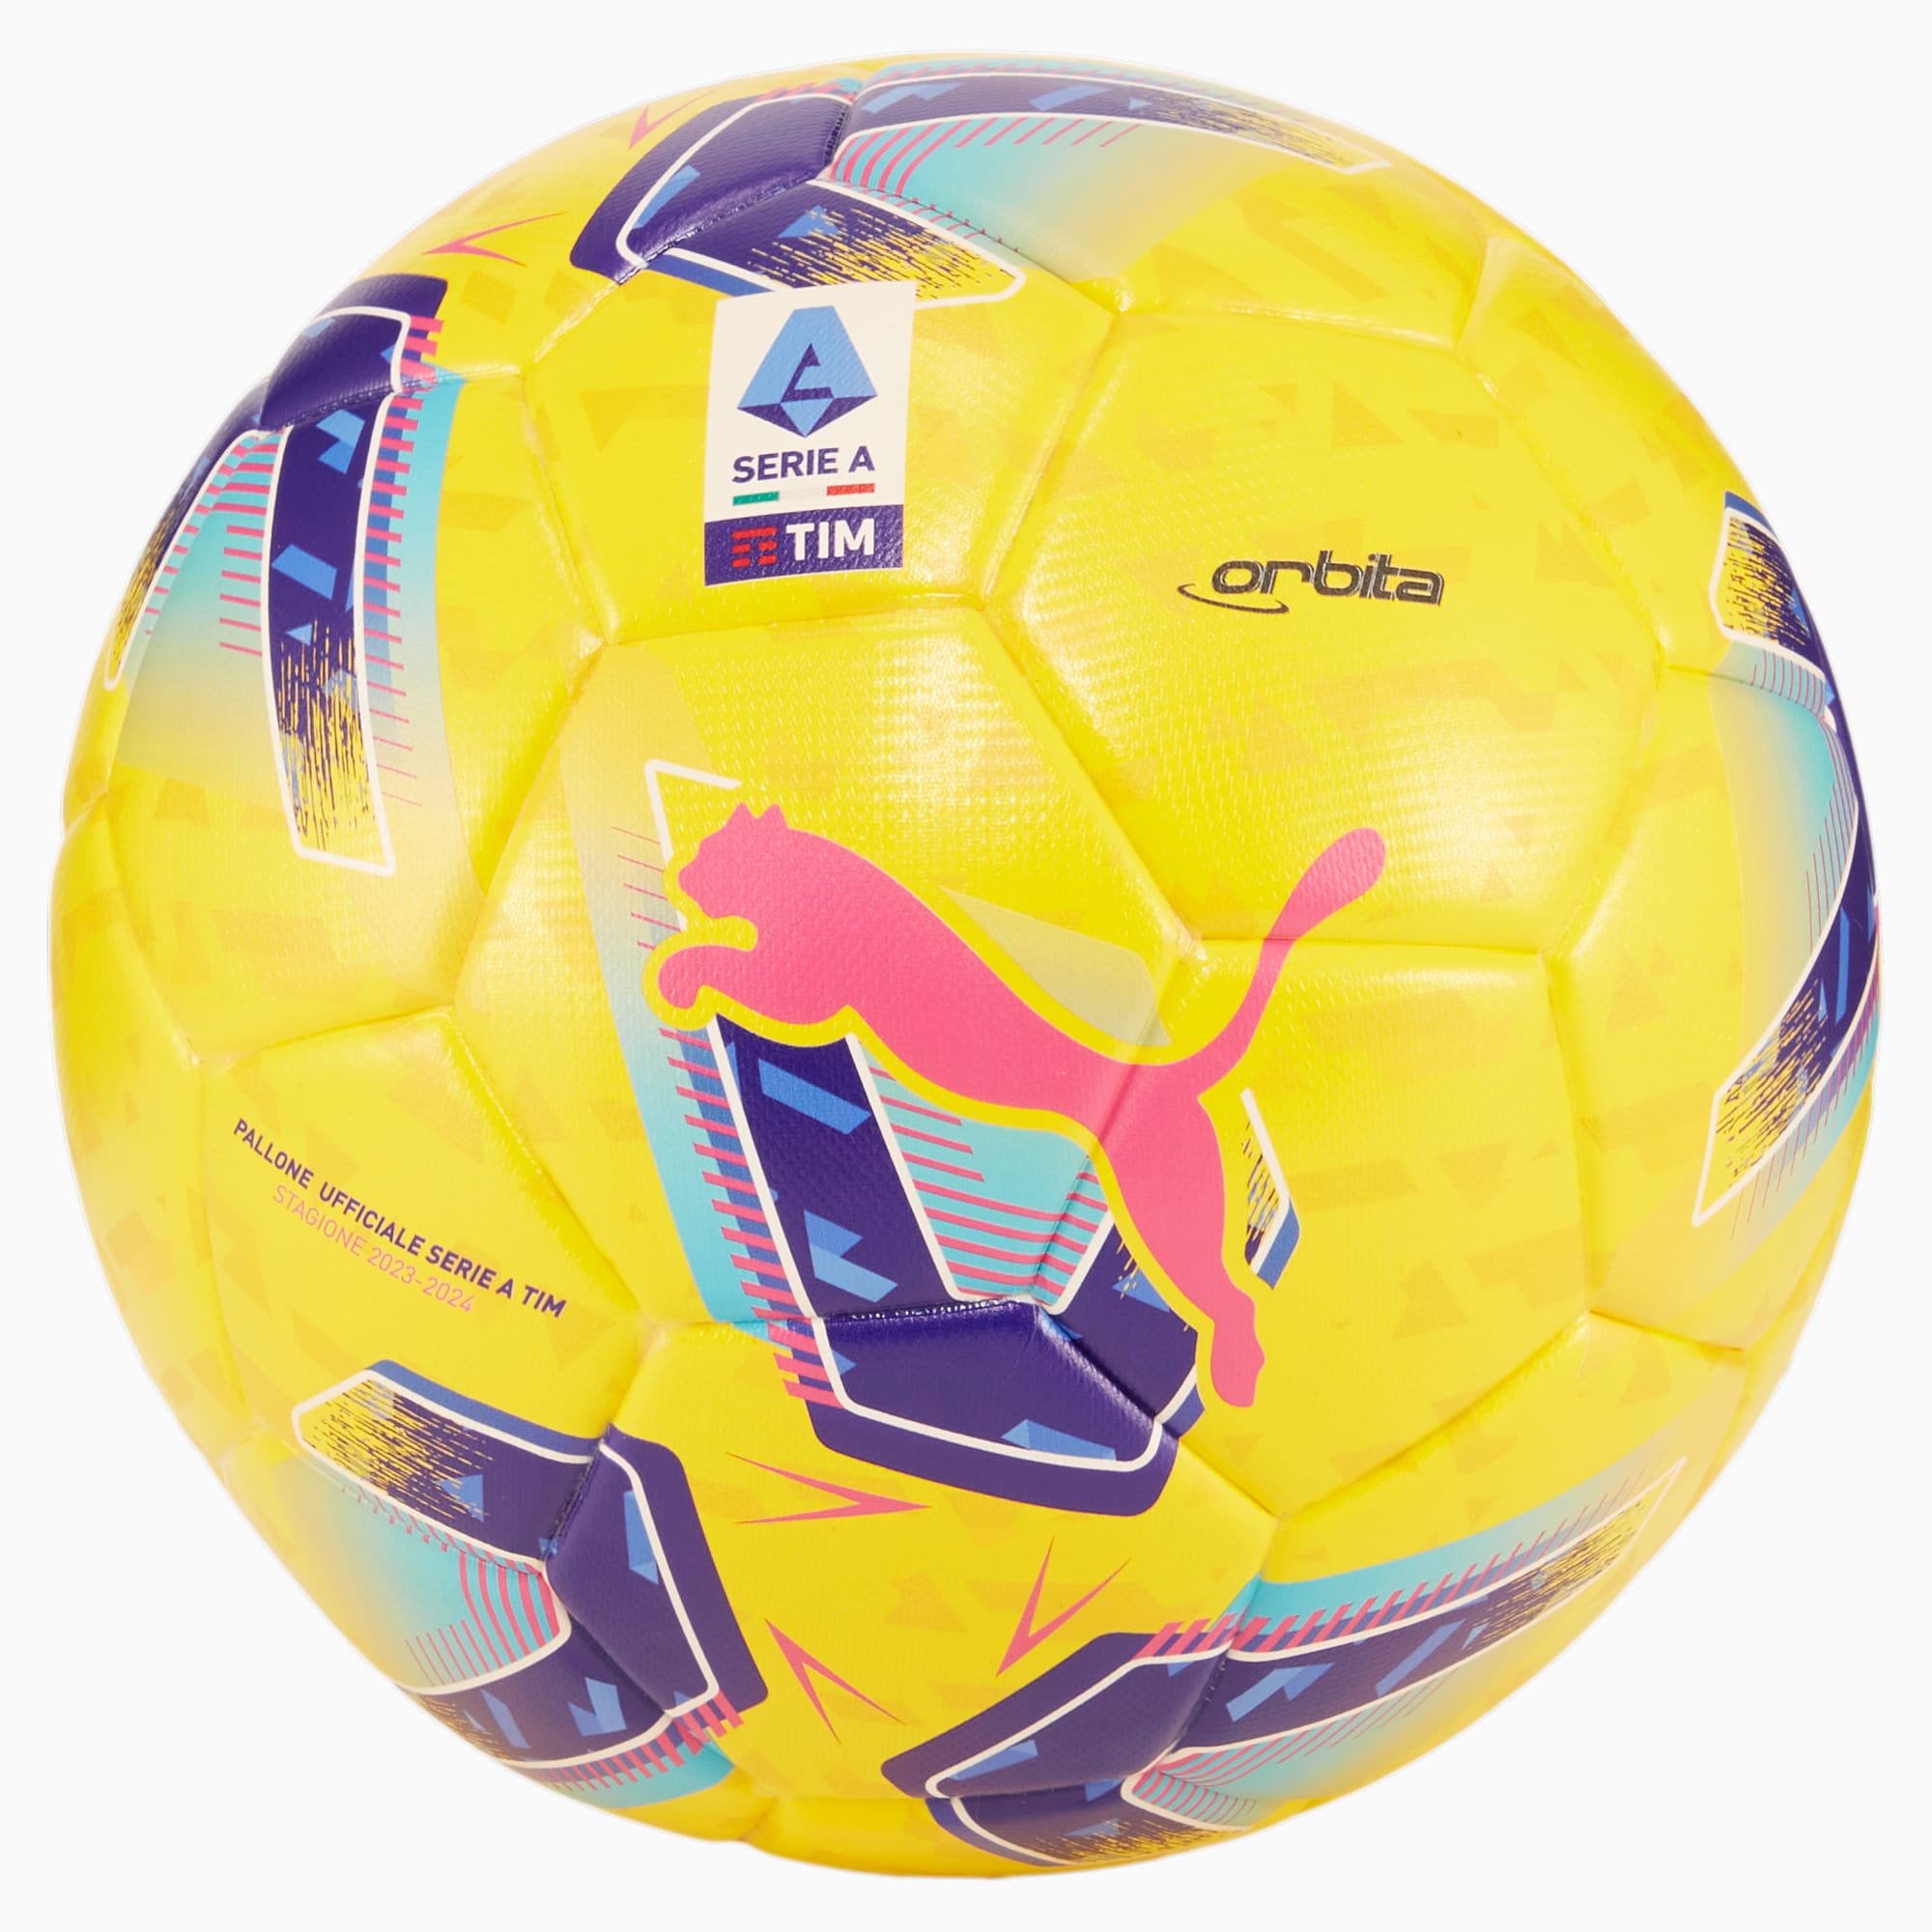 PUMA Orbita Serie A Replica Fußball, Gelb/Blau, Größe: 5